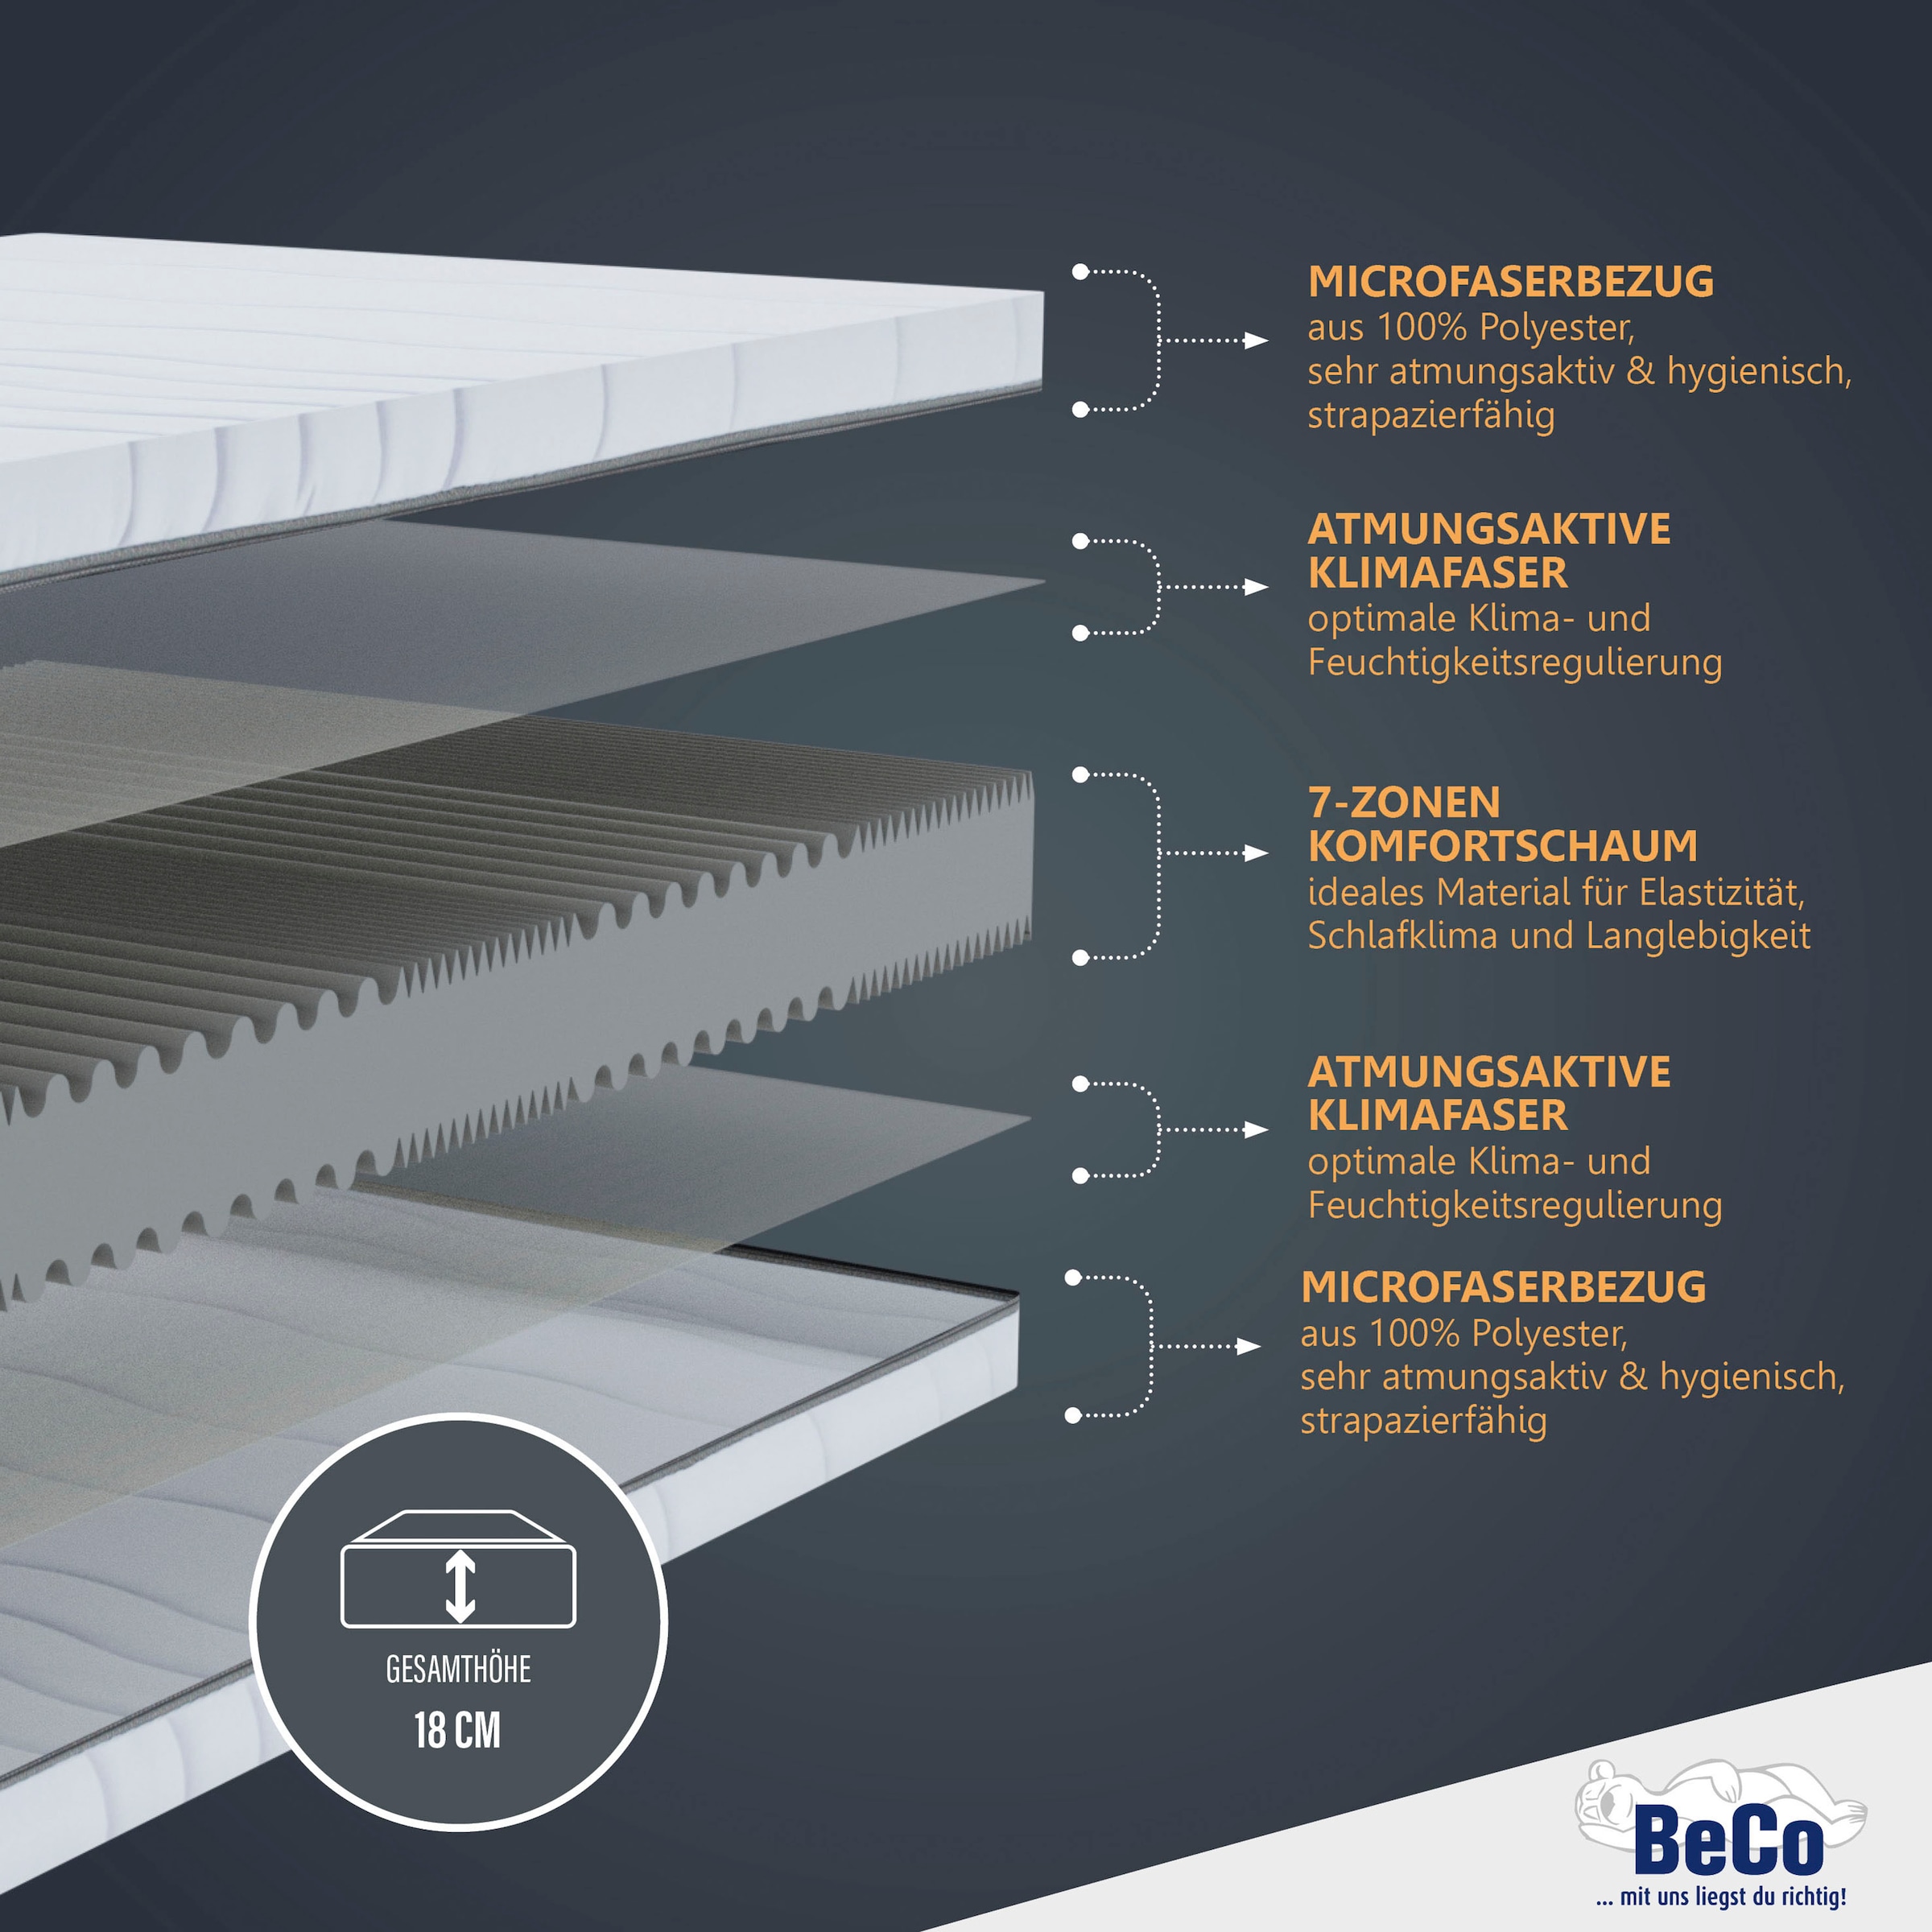 Beco Komfortschaummatratze »Matratze Dream Flex, 7-Zonen-Komfortschaummatratze, diverse Größen«, 18 cm hoch, Raumgewicht: 28 kg/m³, (1 St.), Feiner, hygienischer Mikrofaser-Bezug